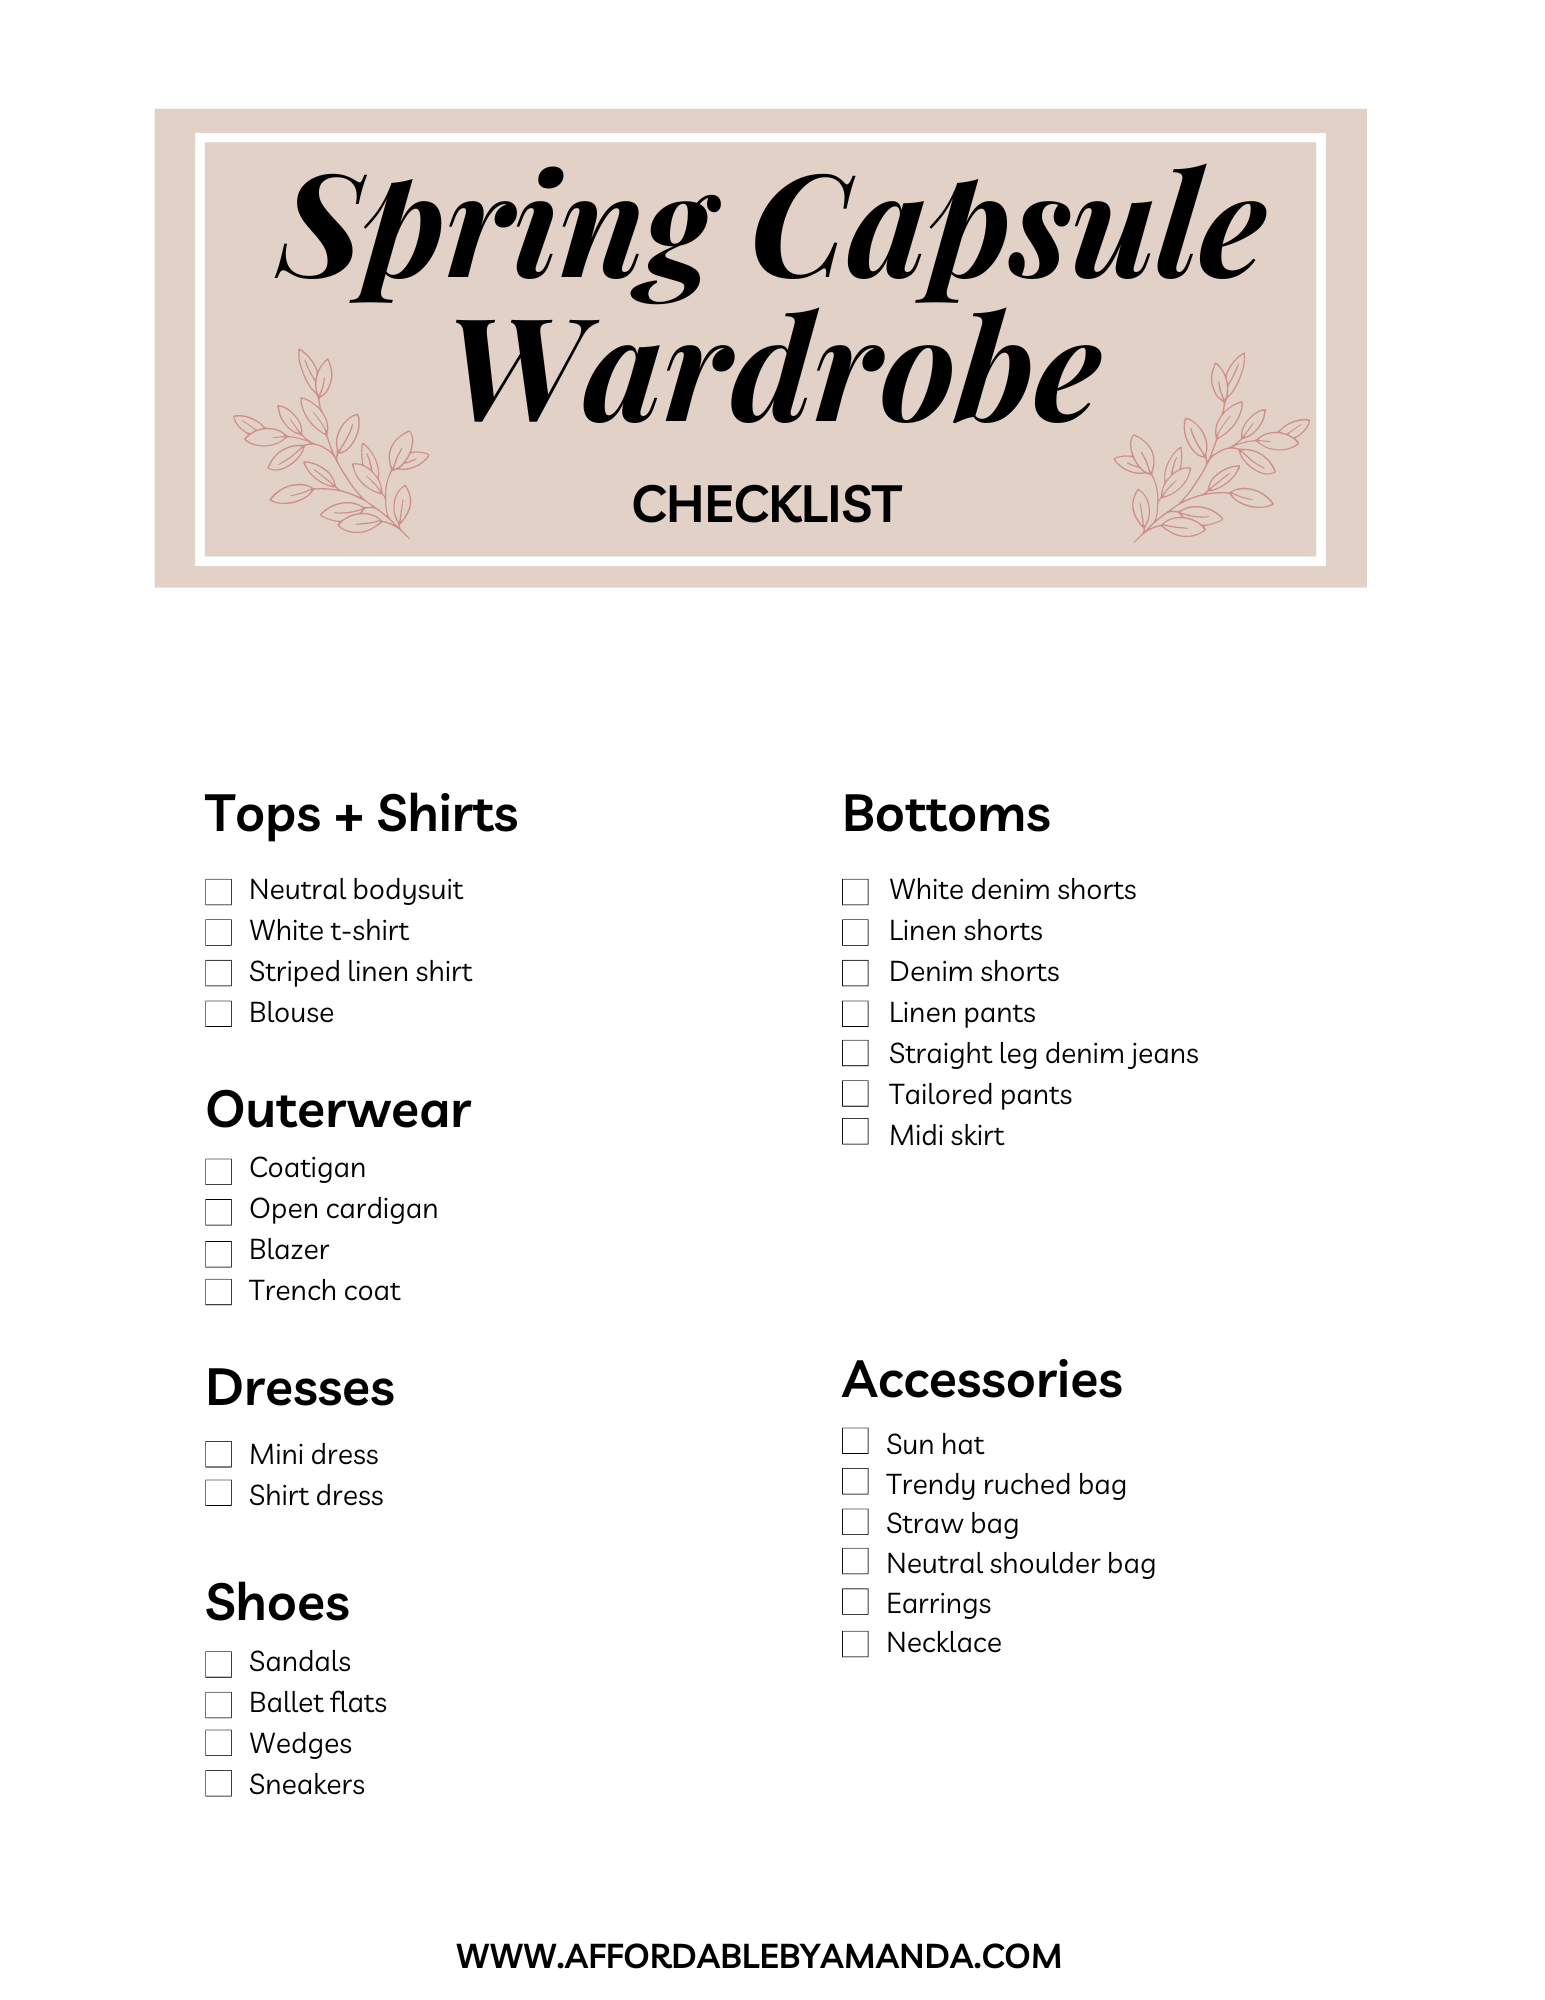 Spring Capsule Wardrobe Checklist